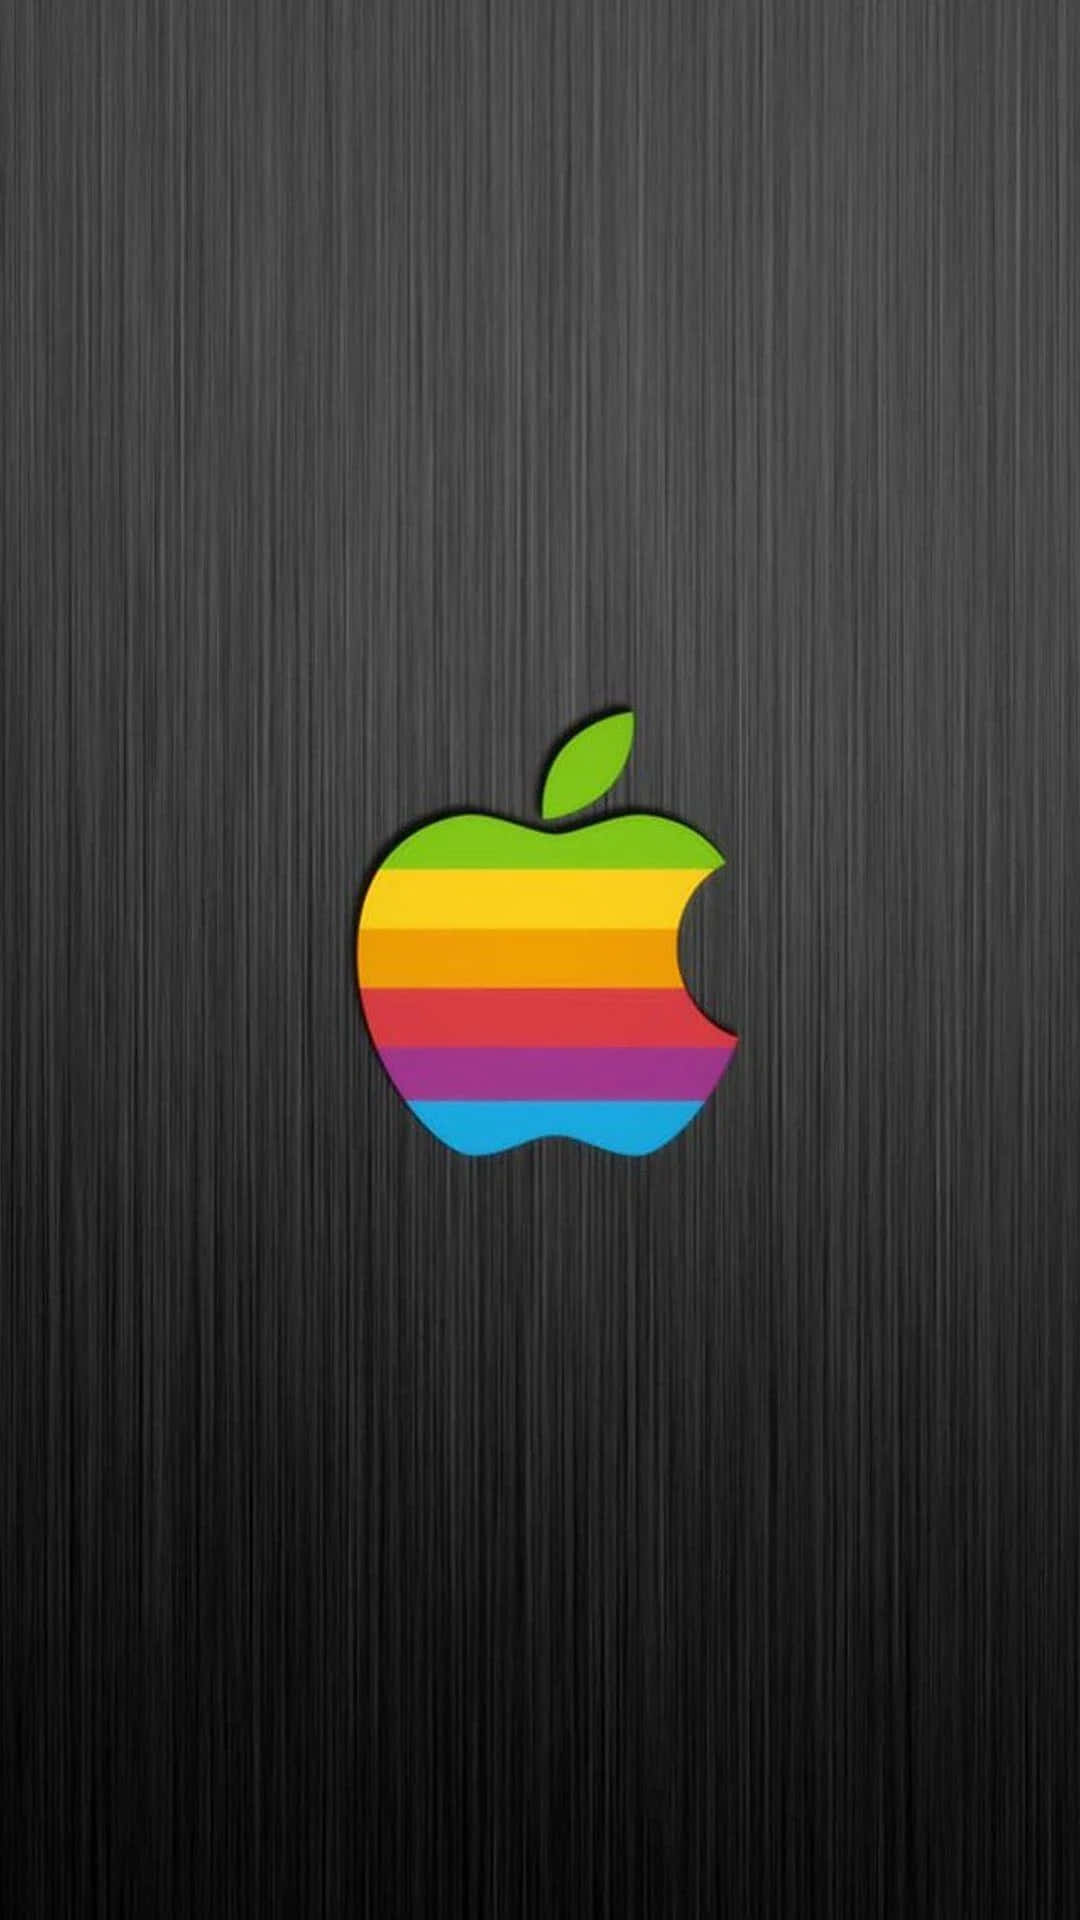 Brillantey Colorido Dispositivo Apple Con Frutas De Manzana Siendo Exhibido.